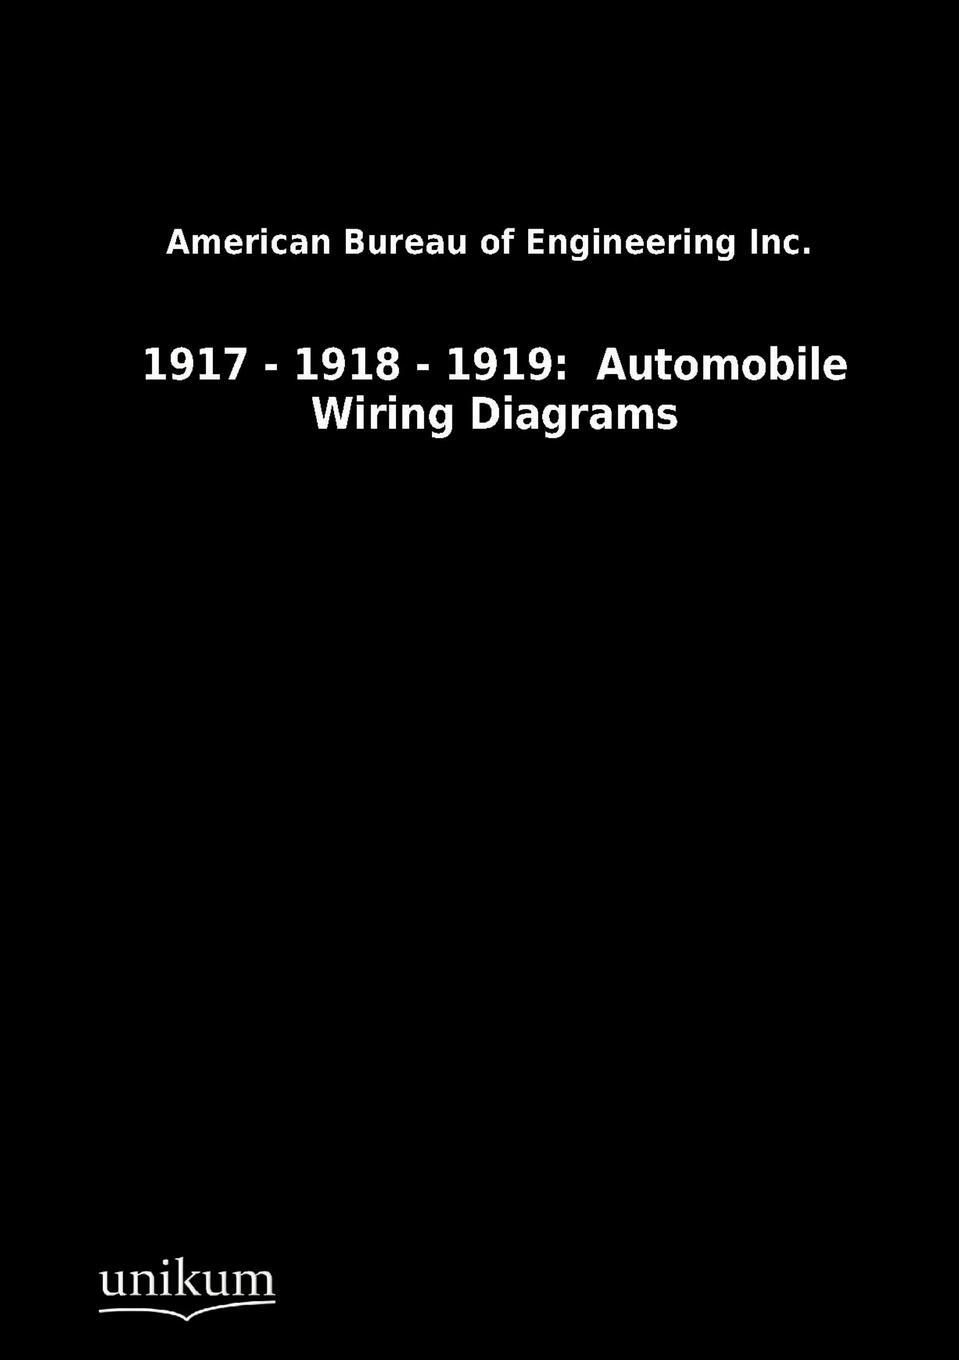 фото 1917 - 1918 - 1919. Automobile Wiring Diagrams